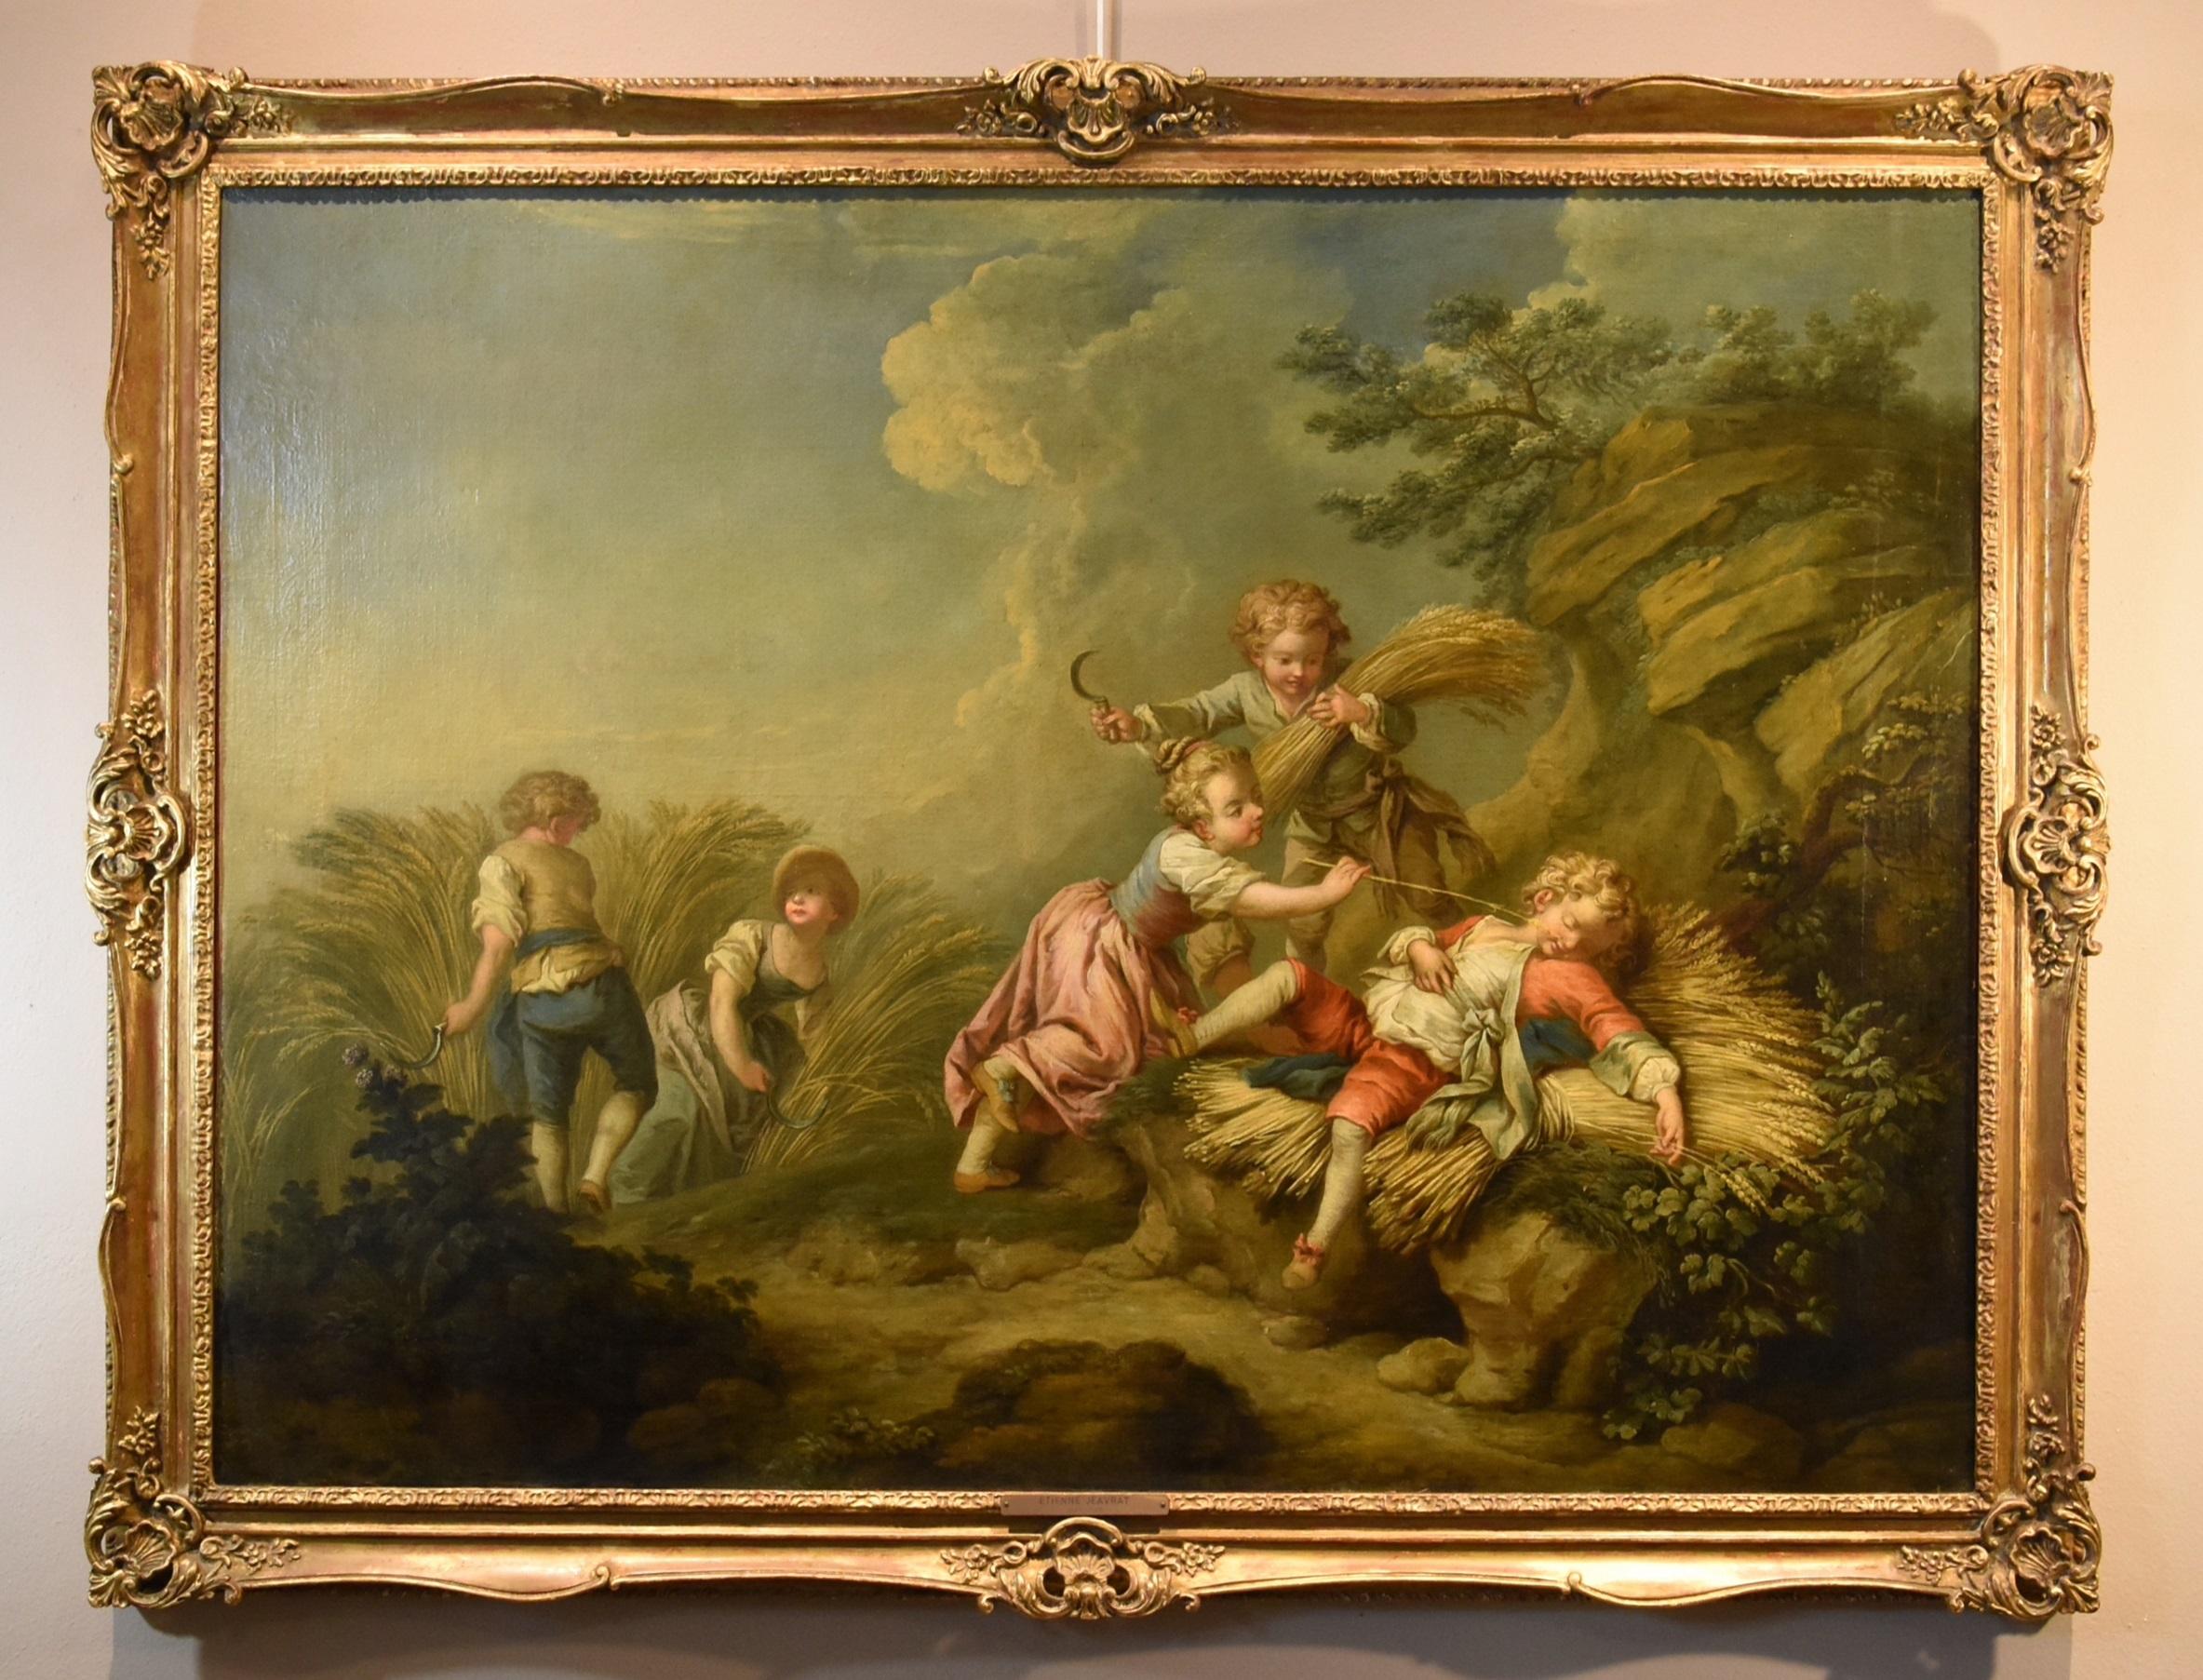 Kinder-Landschaft, Jeaurat-Gemälde, Öl auf Leinwand, 18. Jahrhundert, Alter Meister, Französisch – Painting von Étienne Jeaurat (Vermenton 1699 - Versailles 1789)